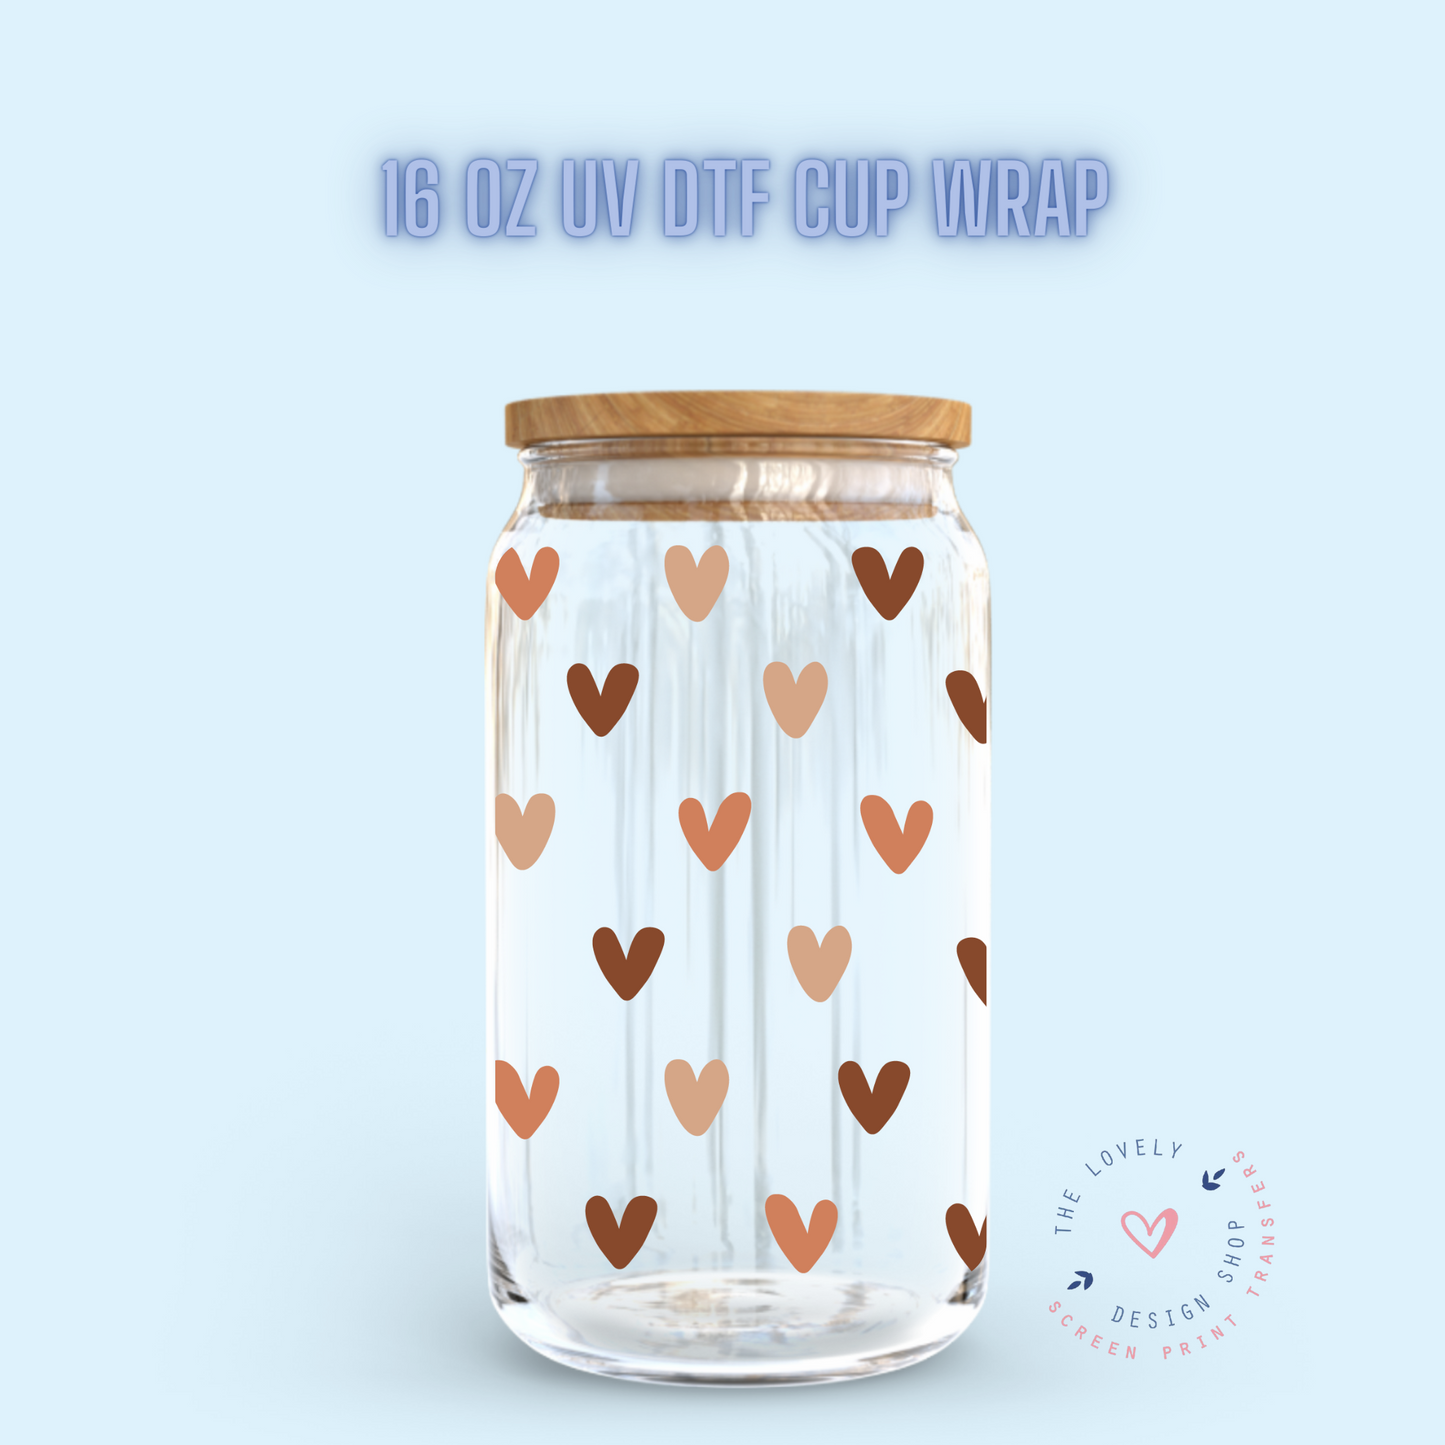 Boho Mini Hearts - UV DTF 16 oz Libbey Cup Wrap (Ready to Ship)